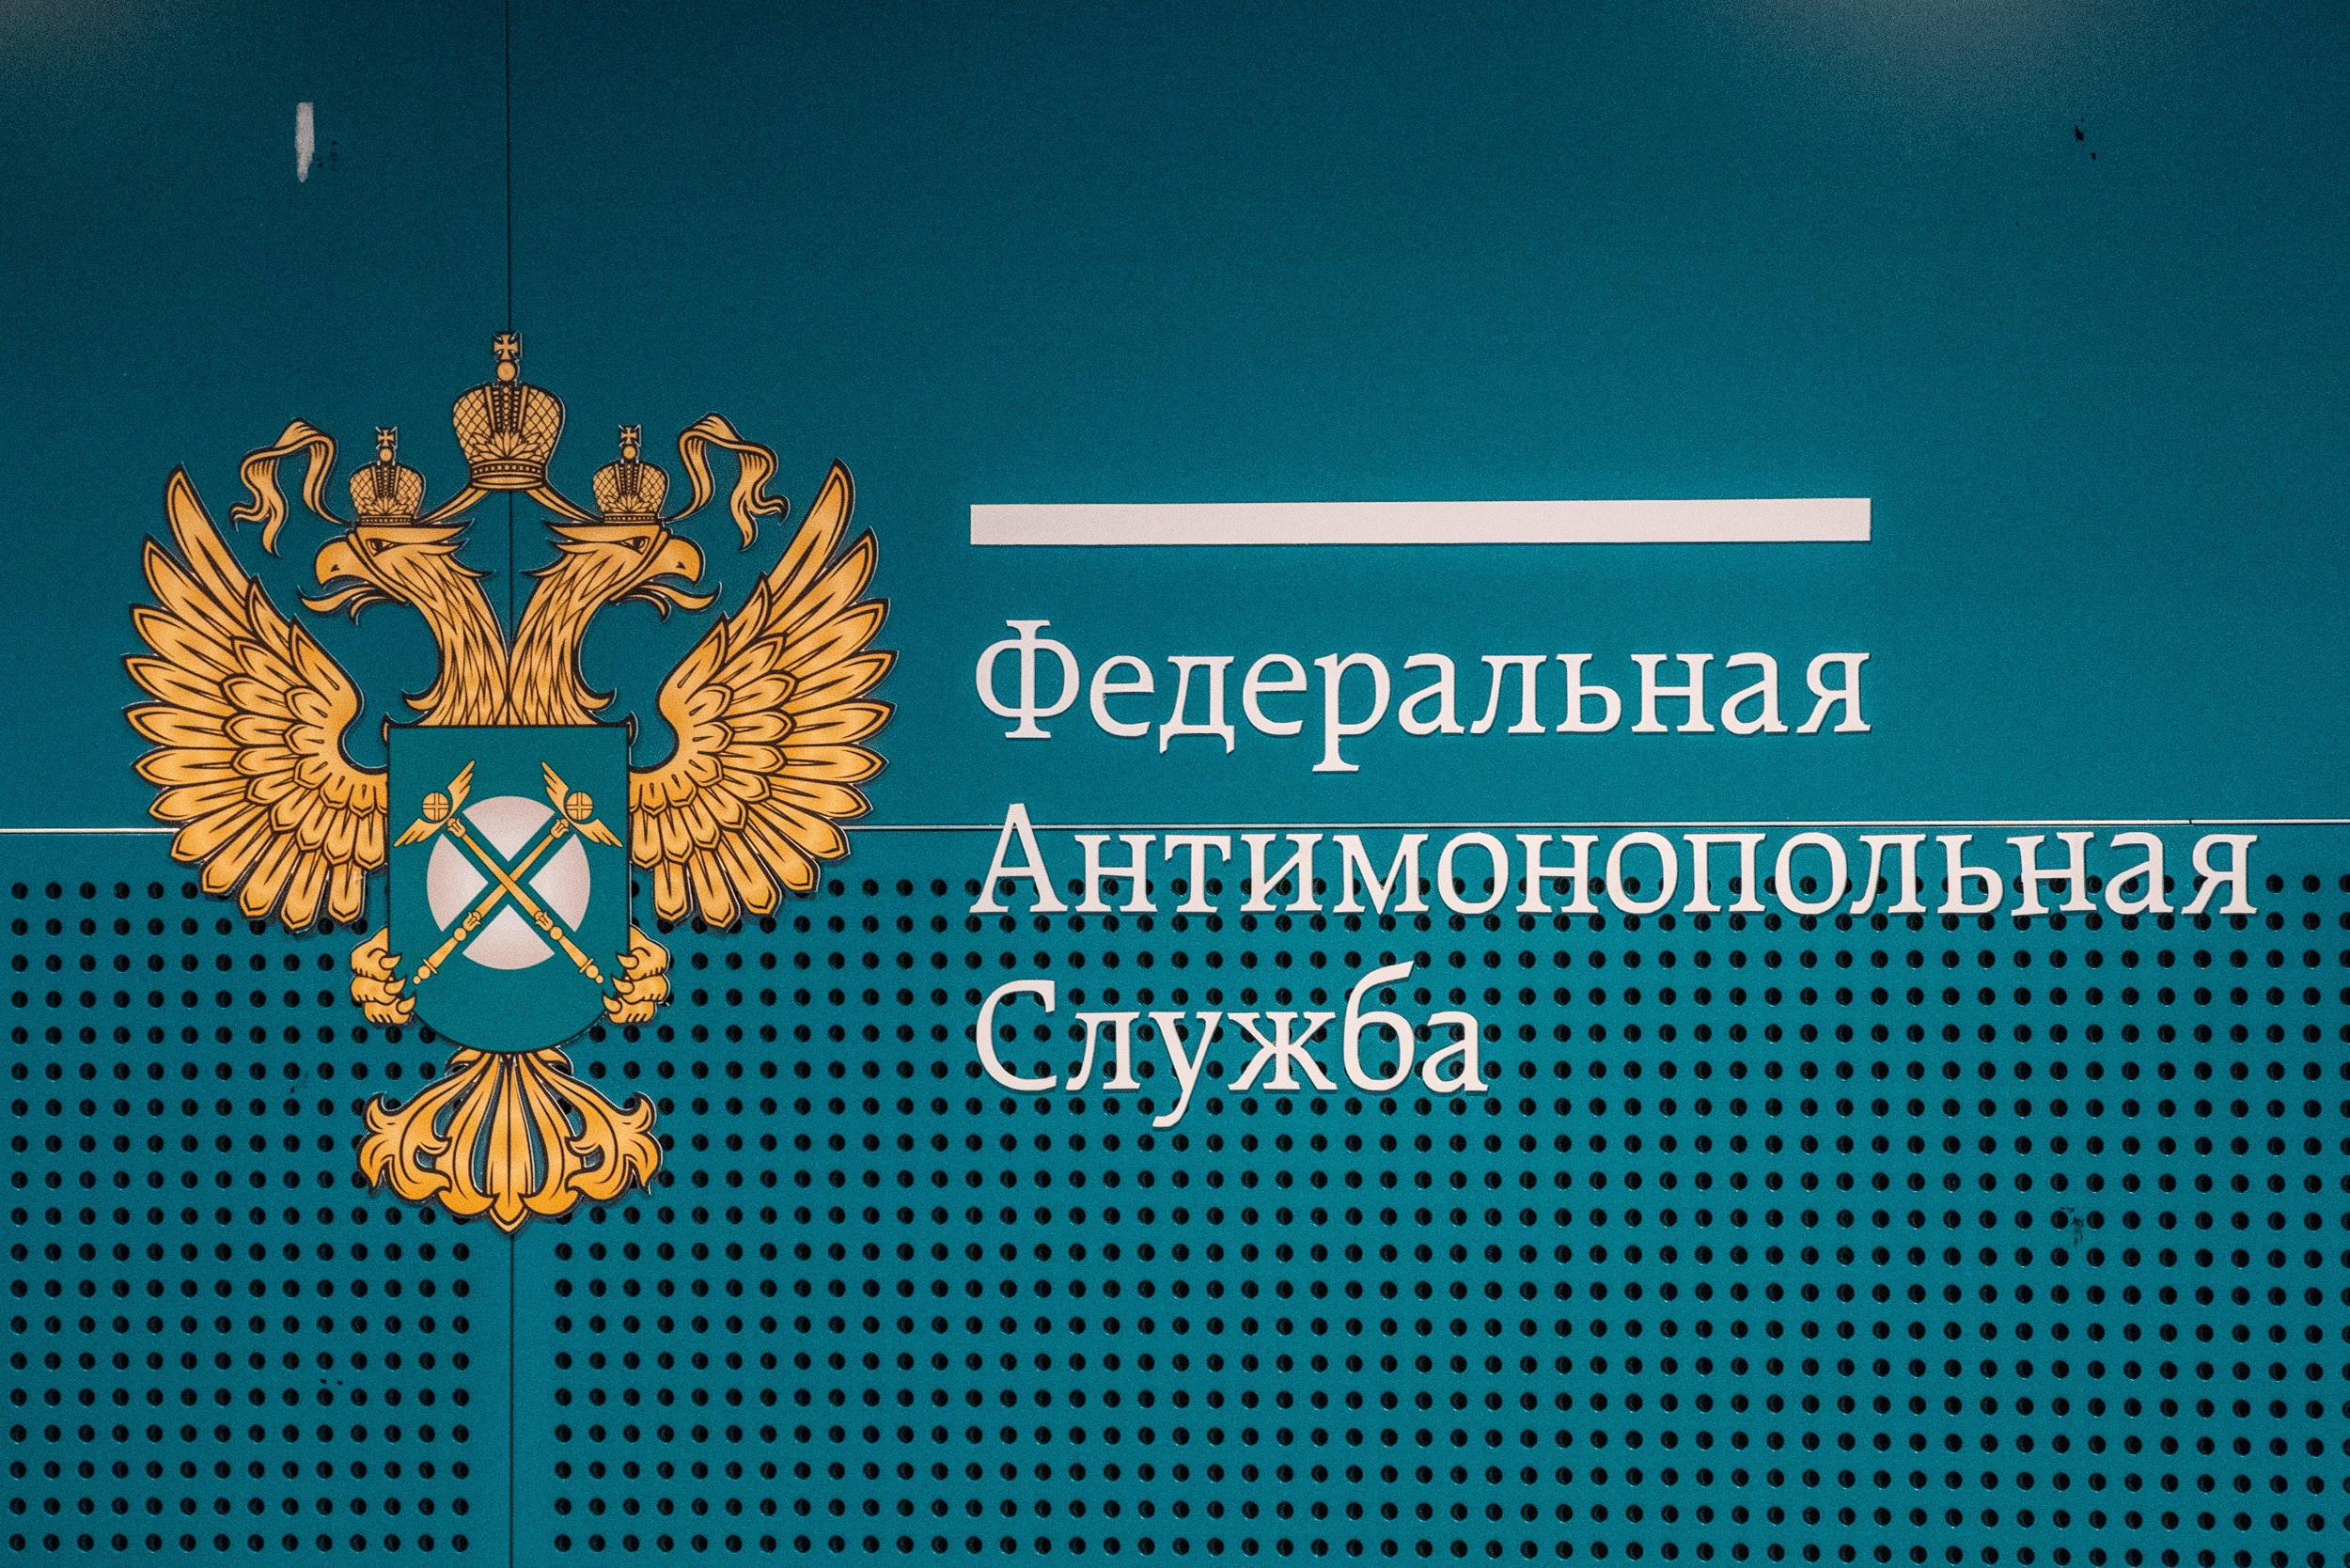 ФАС: компания ПАО «ТГК-2» отчиталась об уплате штрафа в 324,5 млн рублей